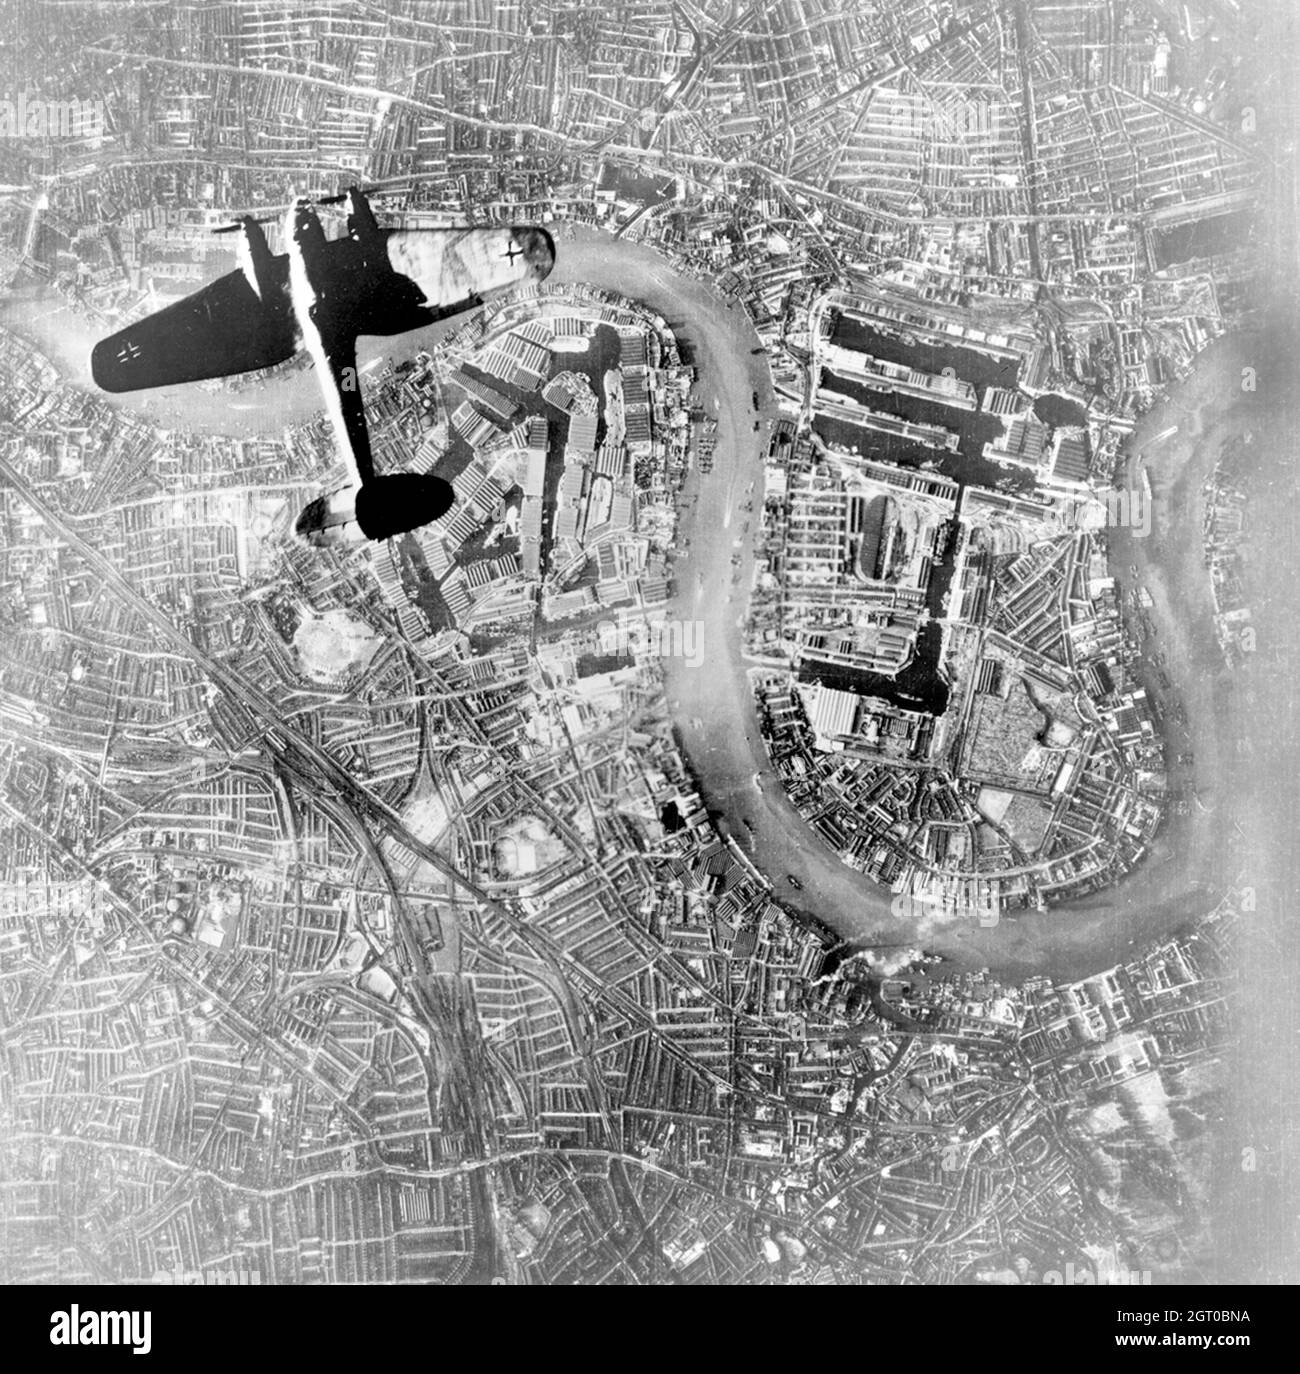 Un bombardier allemand Luftwaffe Heinkel He 111 survolant Wapping et l'île de Dogs dans l'est de Londres au début des raids nocturnes de la Luftwaffe du 7 septembre 1940. Banque D'Images